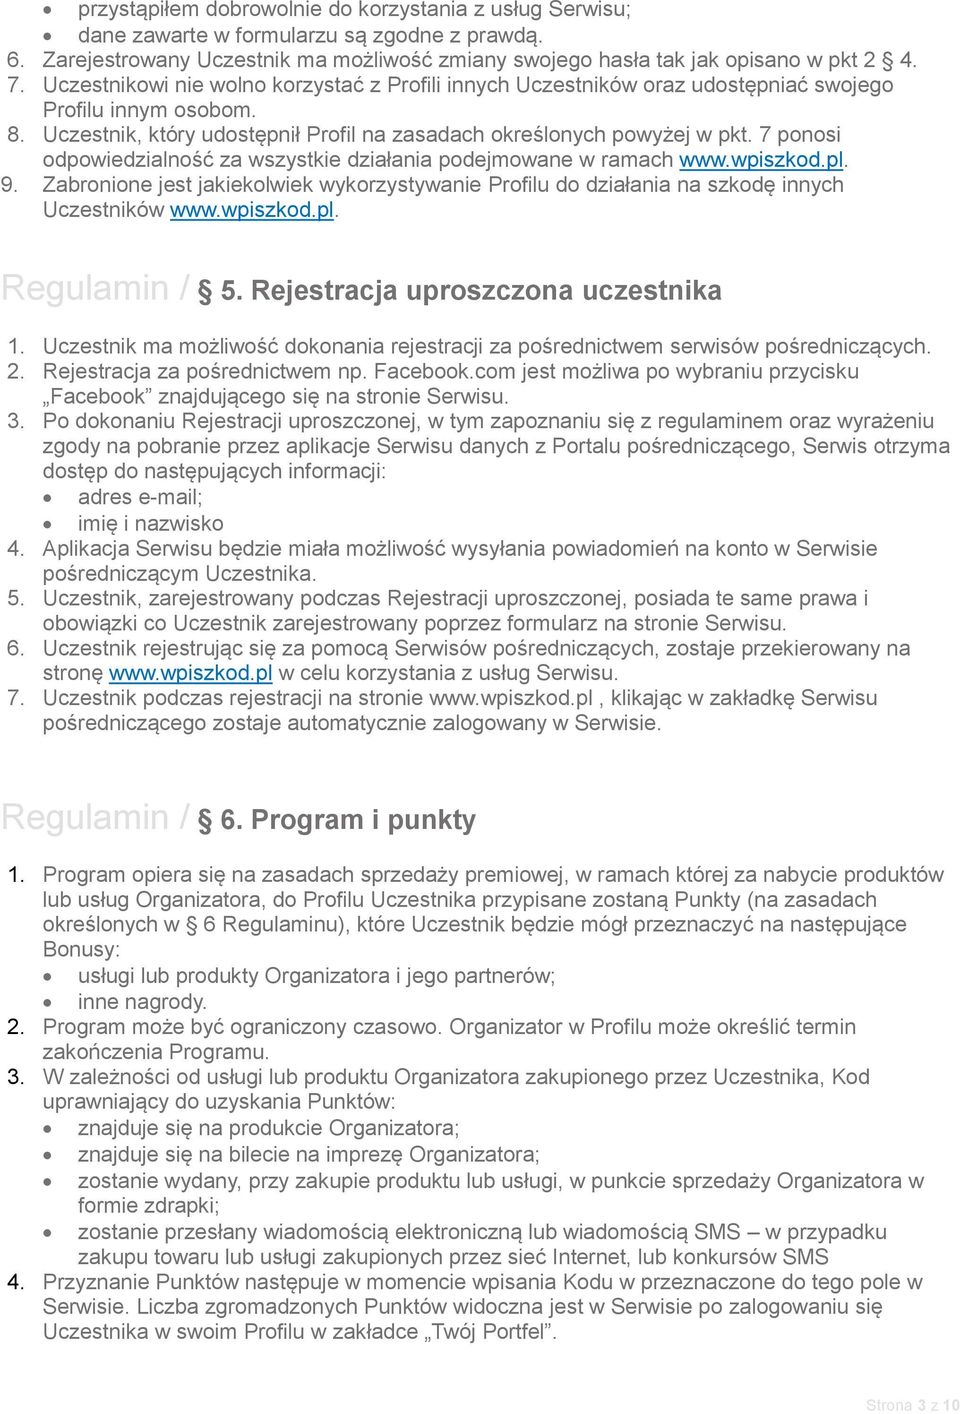 7 ponosi odpowiedzialność za wszystkie działania podejmowane w ramach www.wpiszkod.pl. 9. Zabronione jest jakiekolwiek wykorzystywanie Profilu do działania na szkodę innych Uczestników www.wpiszkod.pl. Regulamin / 5.